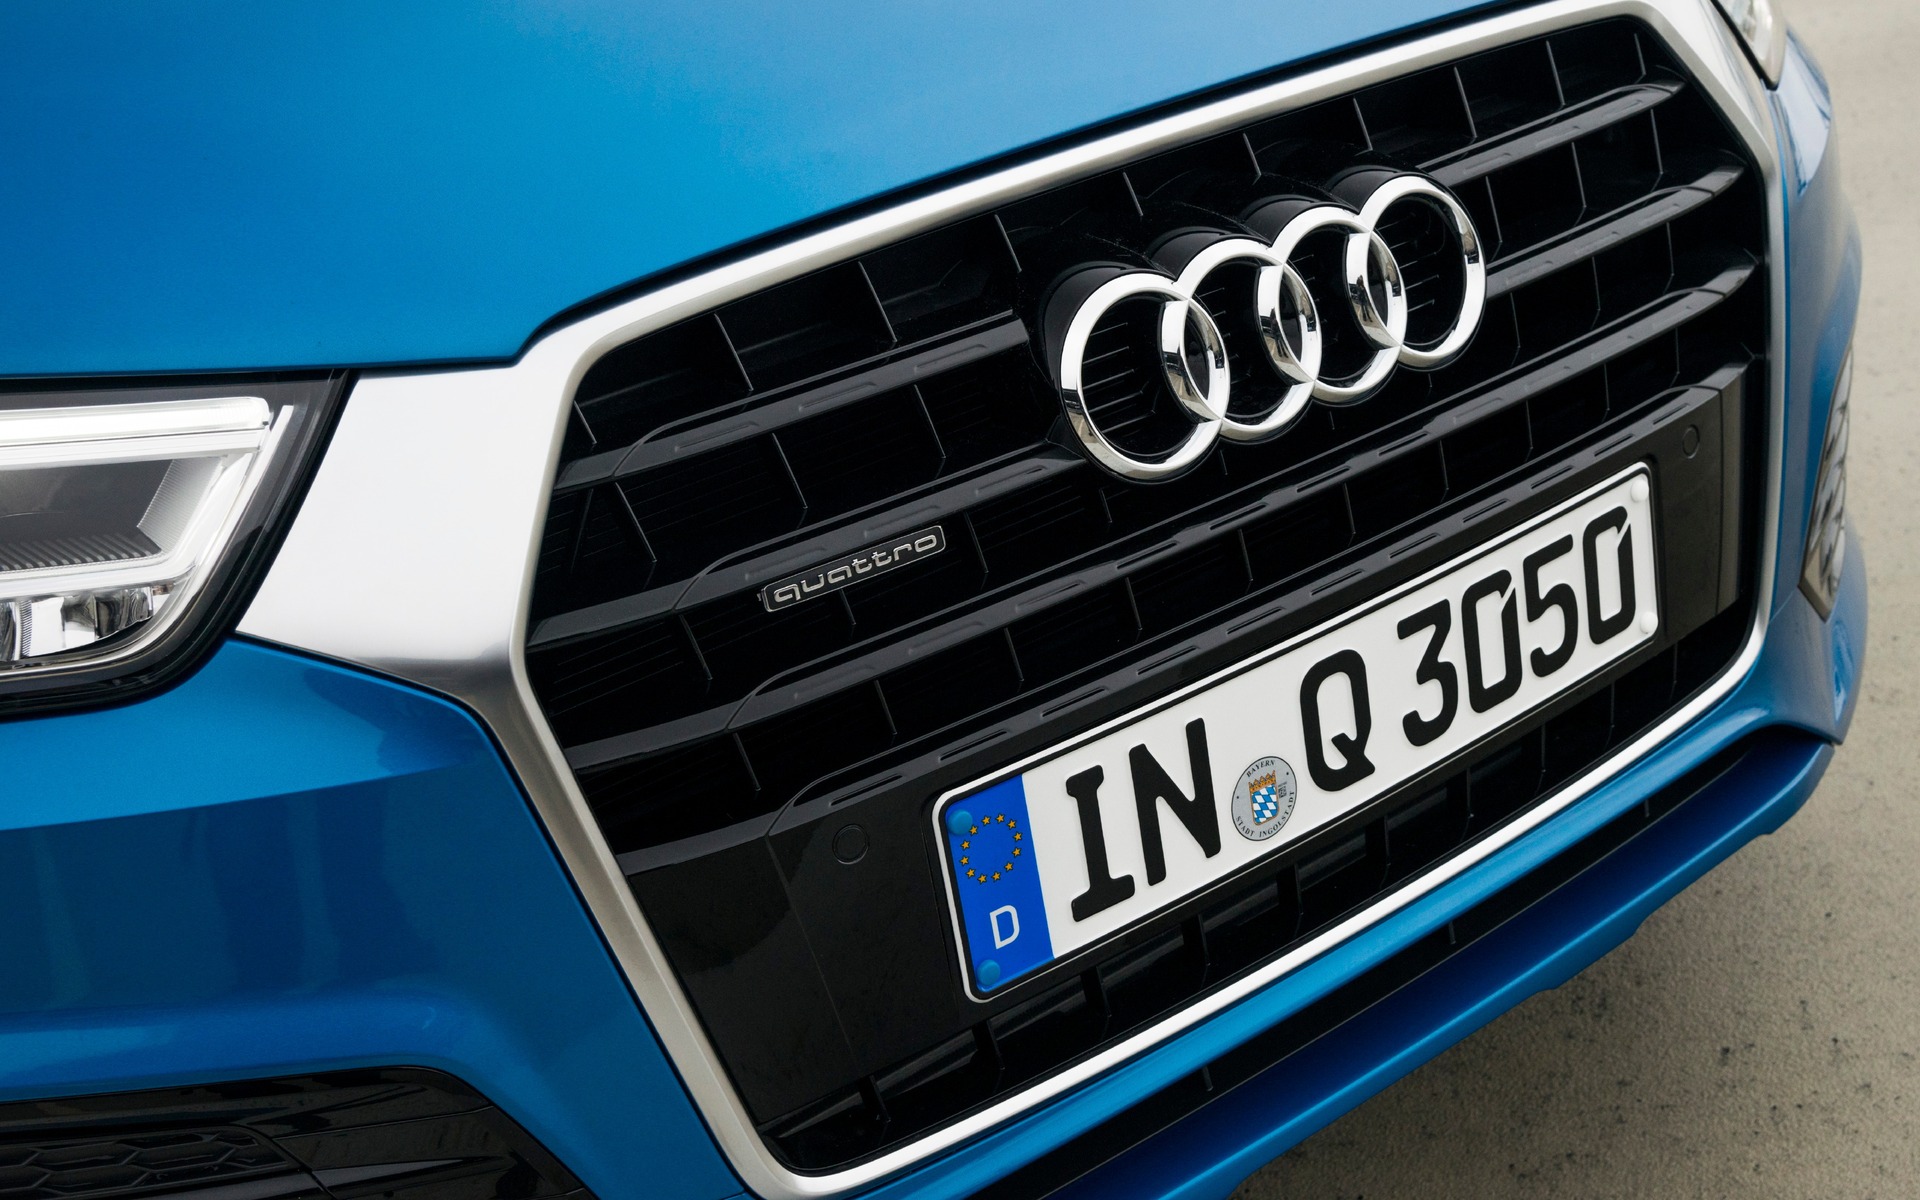 Audi Q3 2016 - Nouvelle calandre Singleframe en relief 